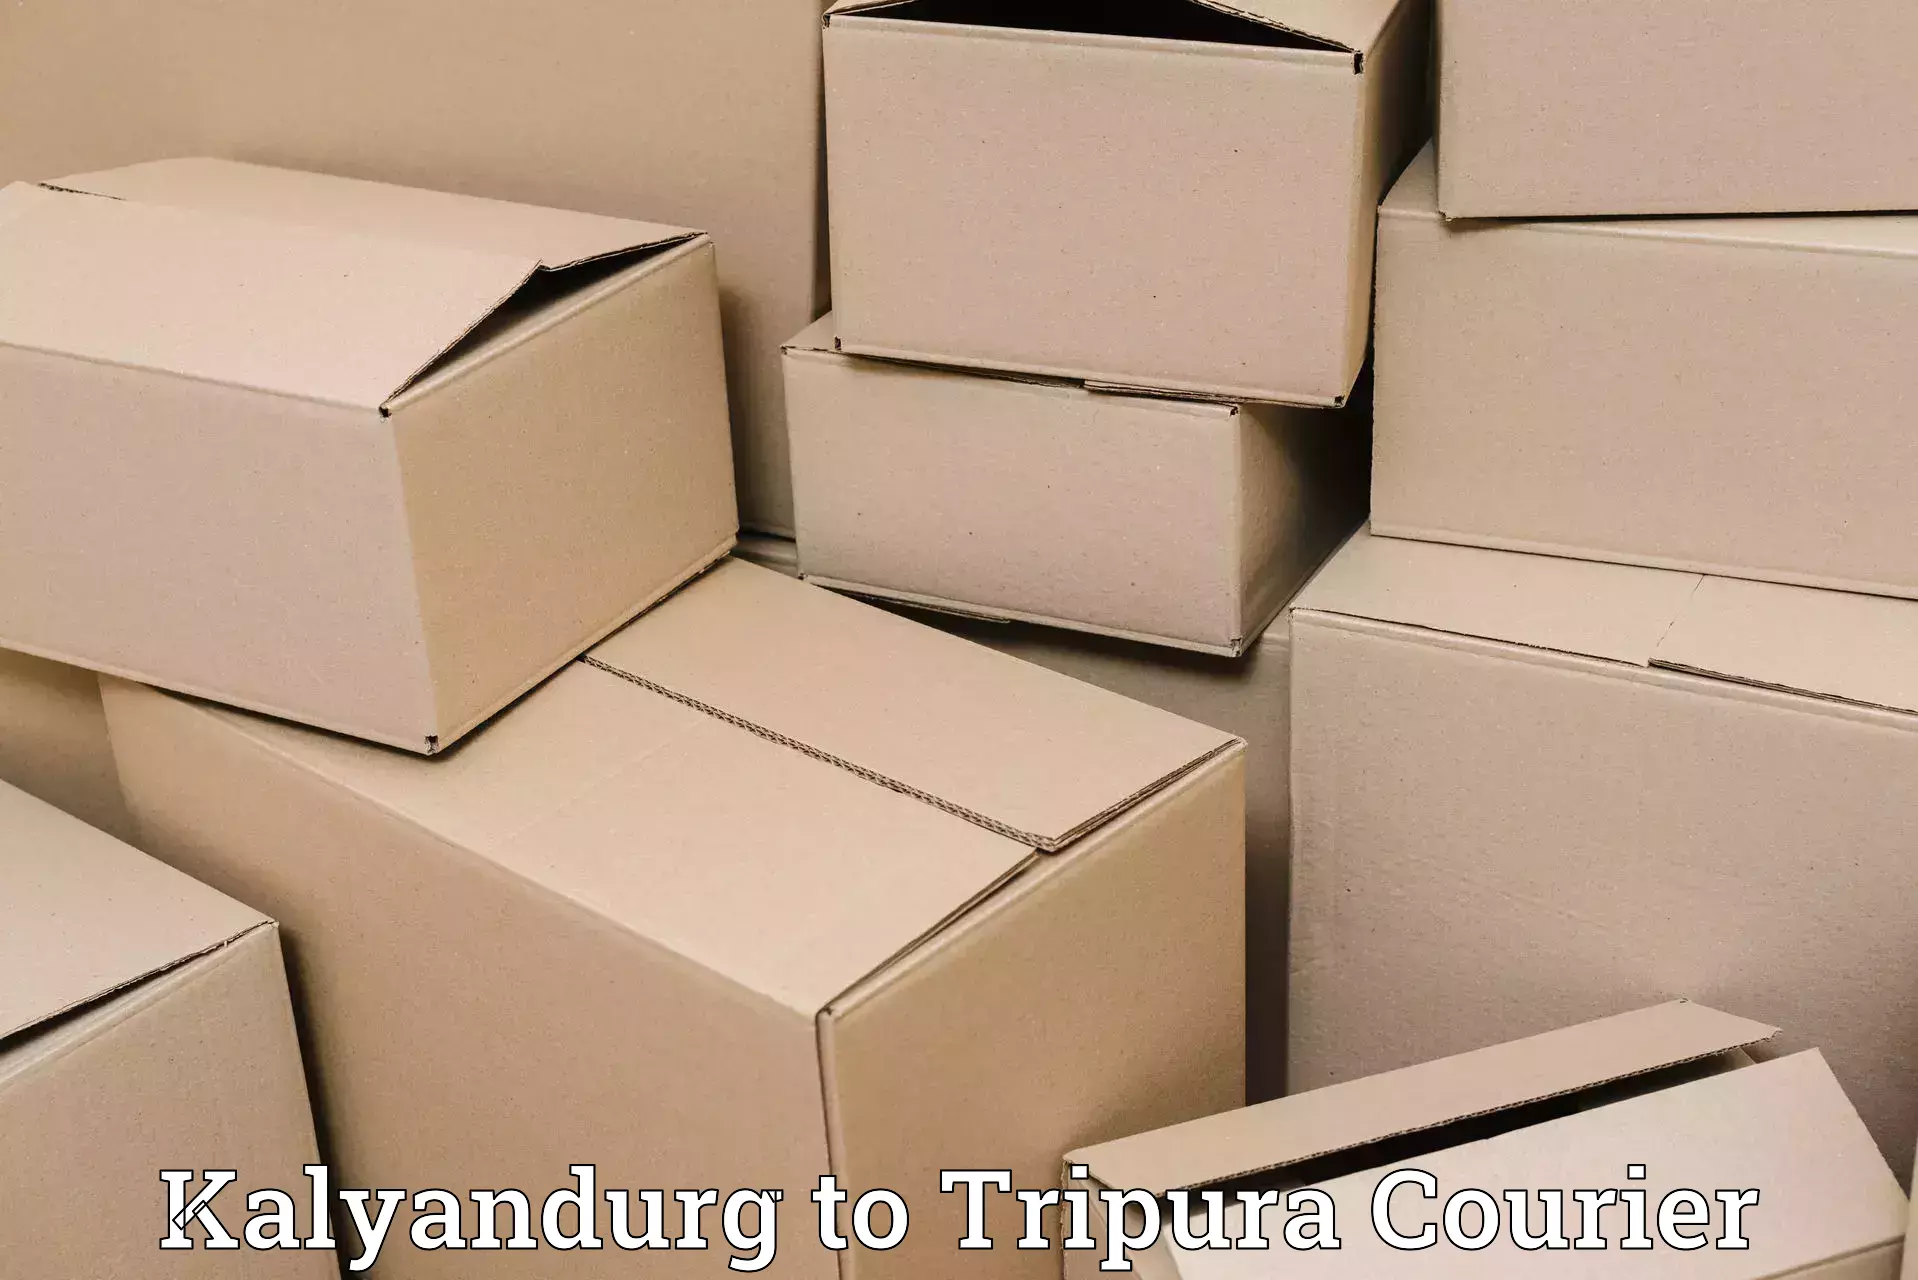 Round-the-clock parcel delivery Kalyandurg to IIIT Agartala